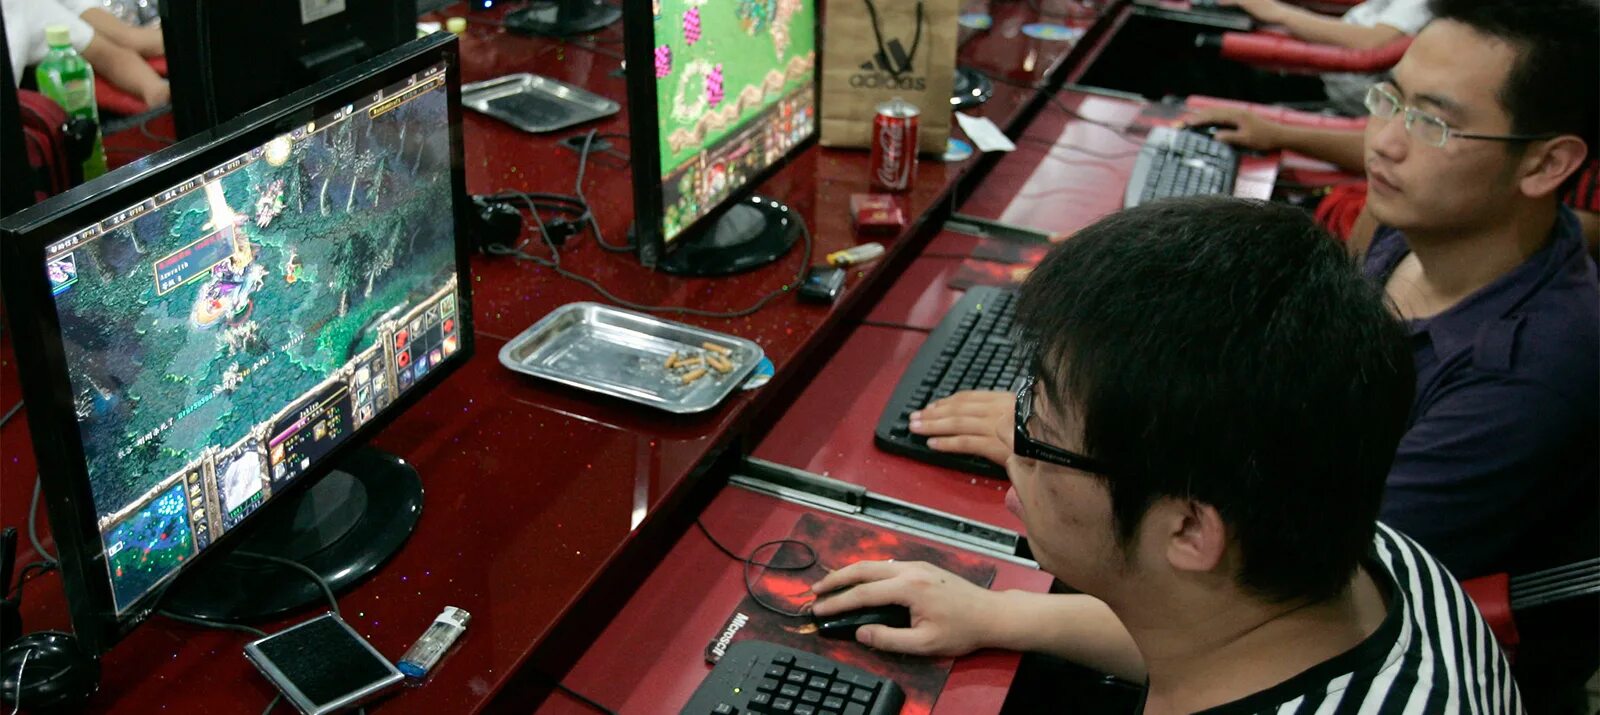 He plays computer games. Игрок в компьютерные игры. Интернет кафе в Китае. Японец за компьютером. Игровая индустрия в Китае.